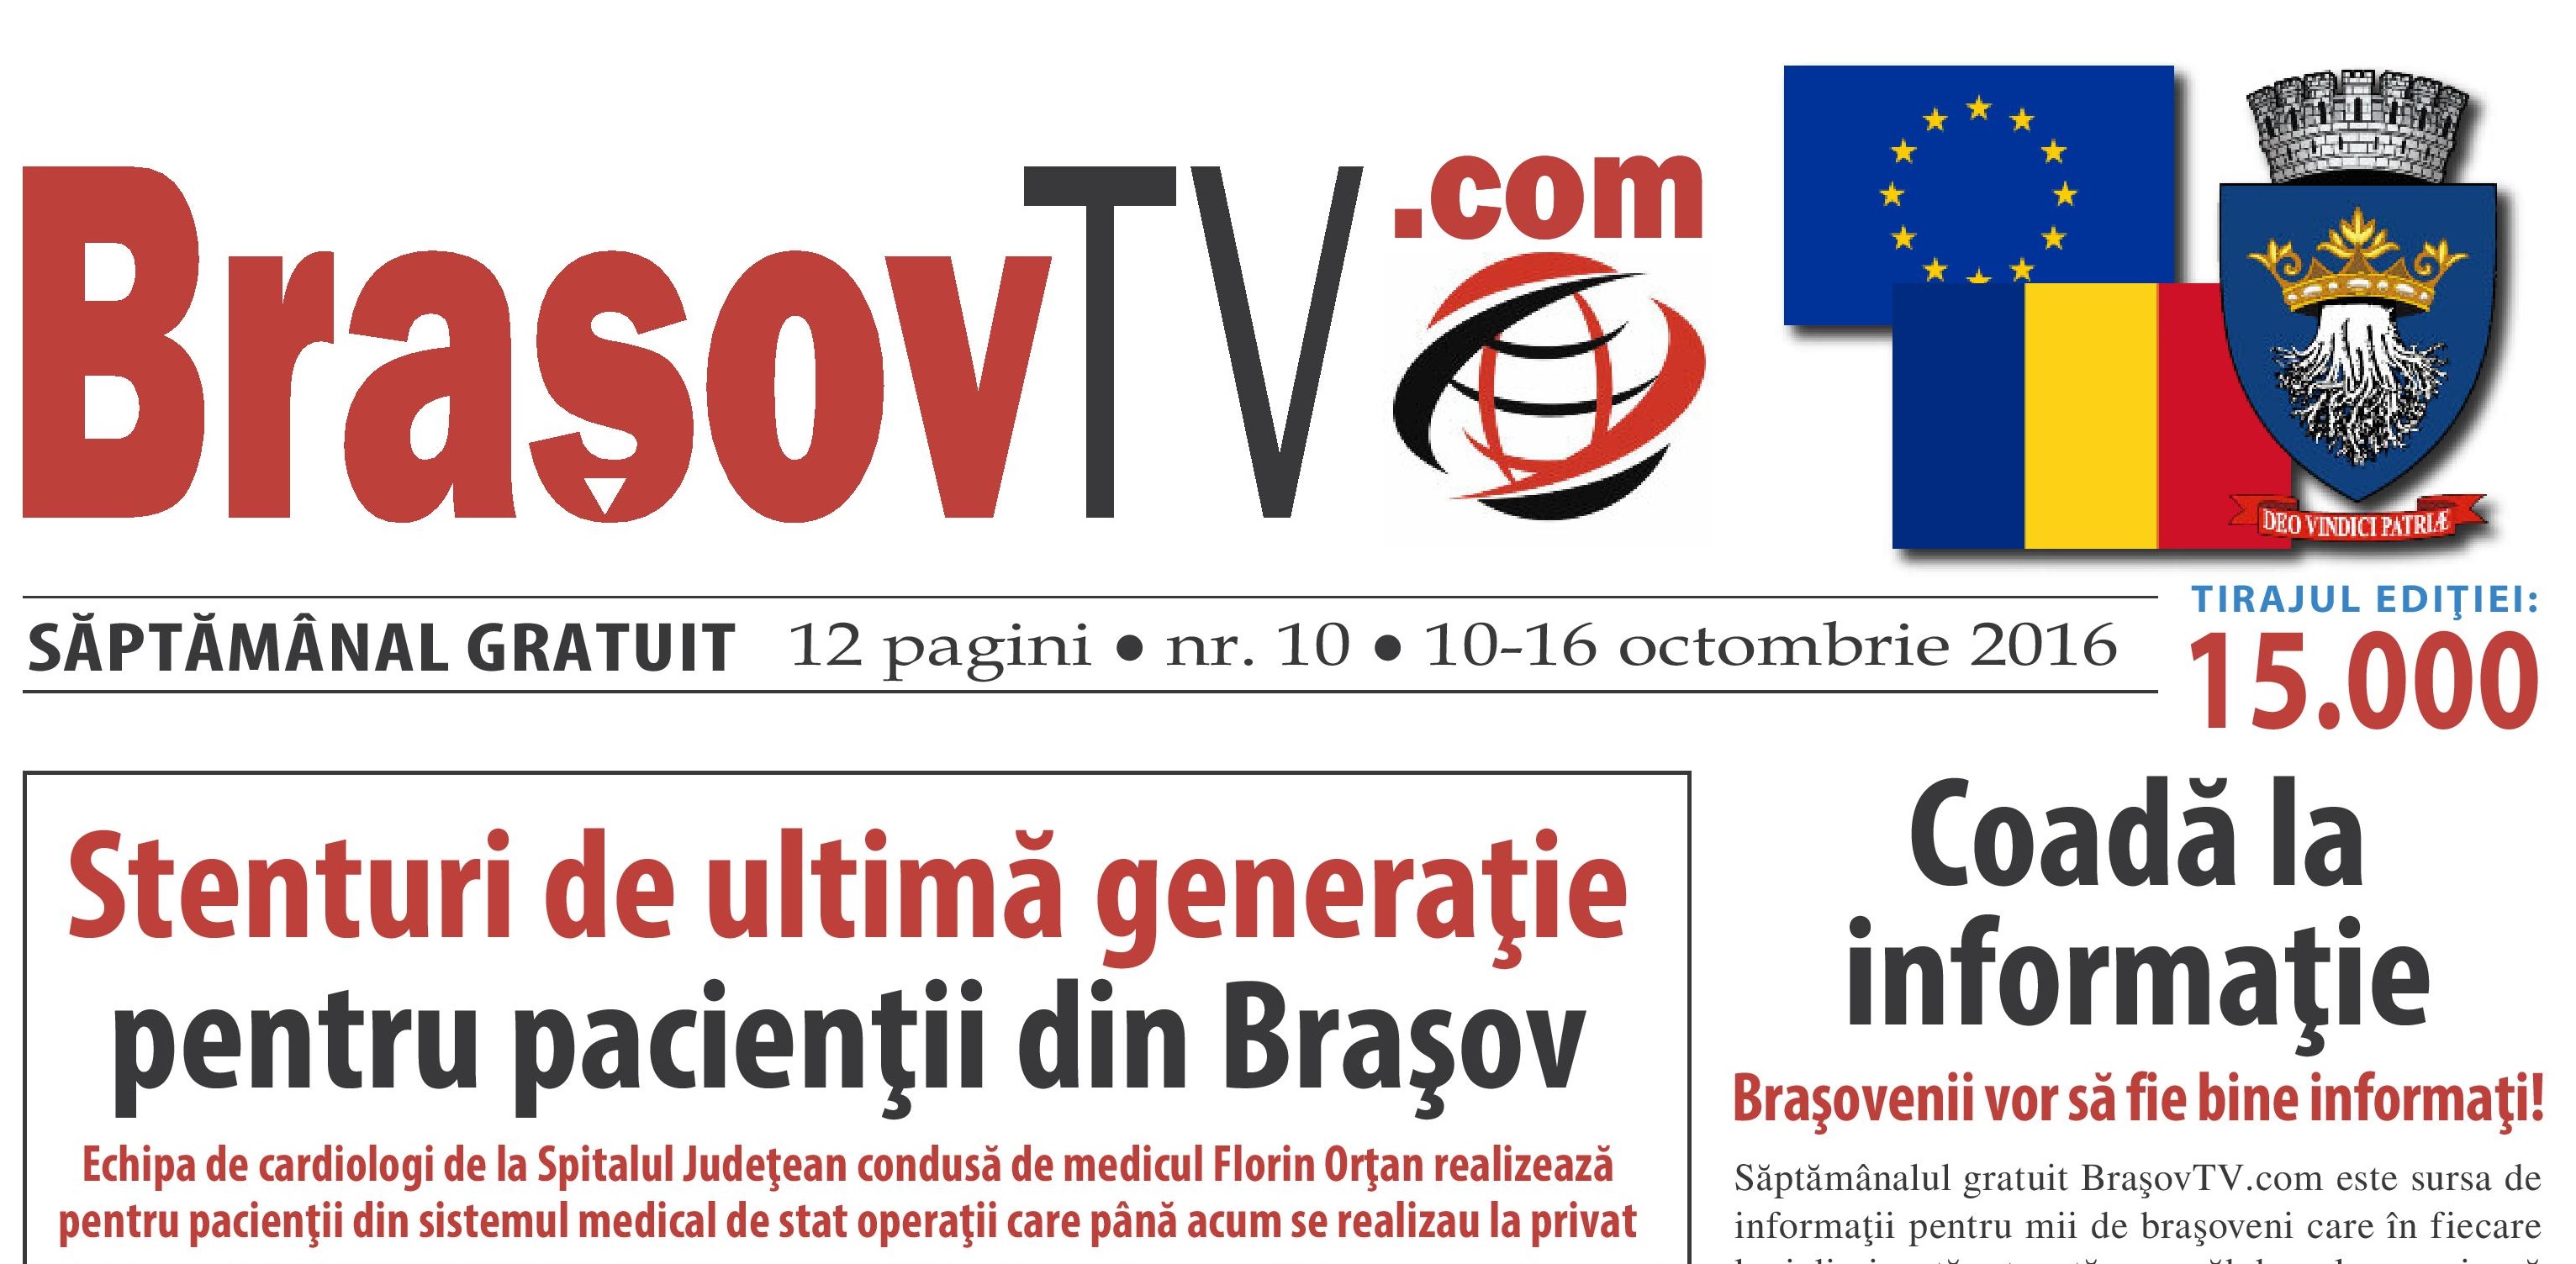 BrasovTV.com